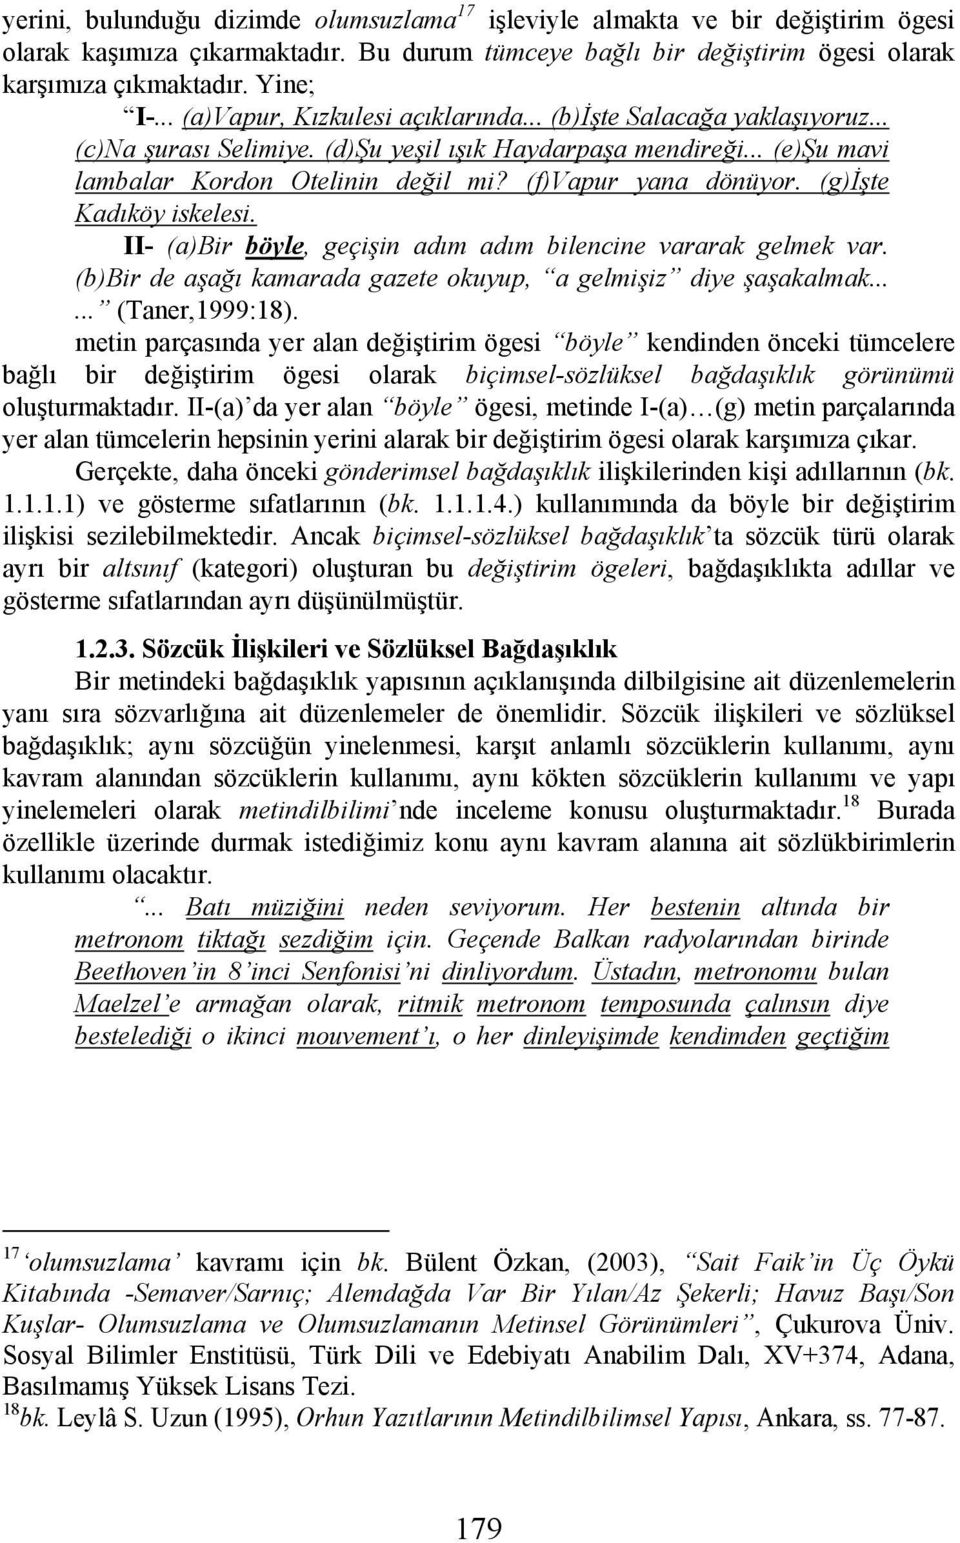 (f)vapur yana dönüyor. (g)işte Kadıköy iskelesi. II- (a)bir böyle, geçişin adım adım bilencine vararak gelmek var. (b)bir de aşağı kamarada gazete okuyup, a gelmişiz diye şaşakalmak...... (Taner,1999:18).